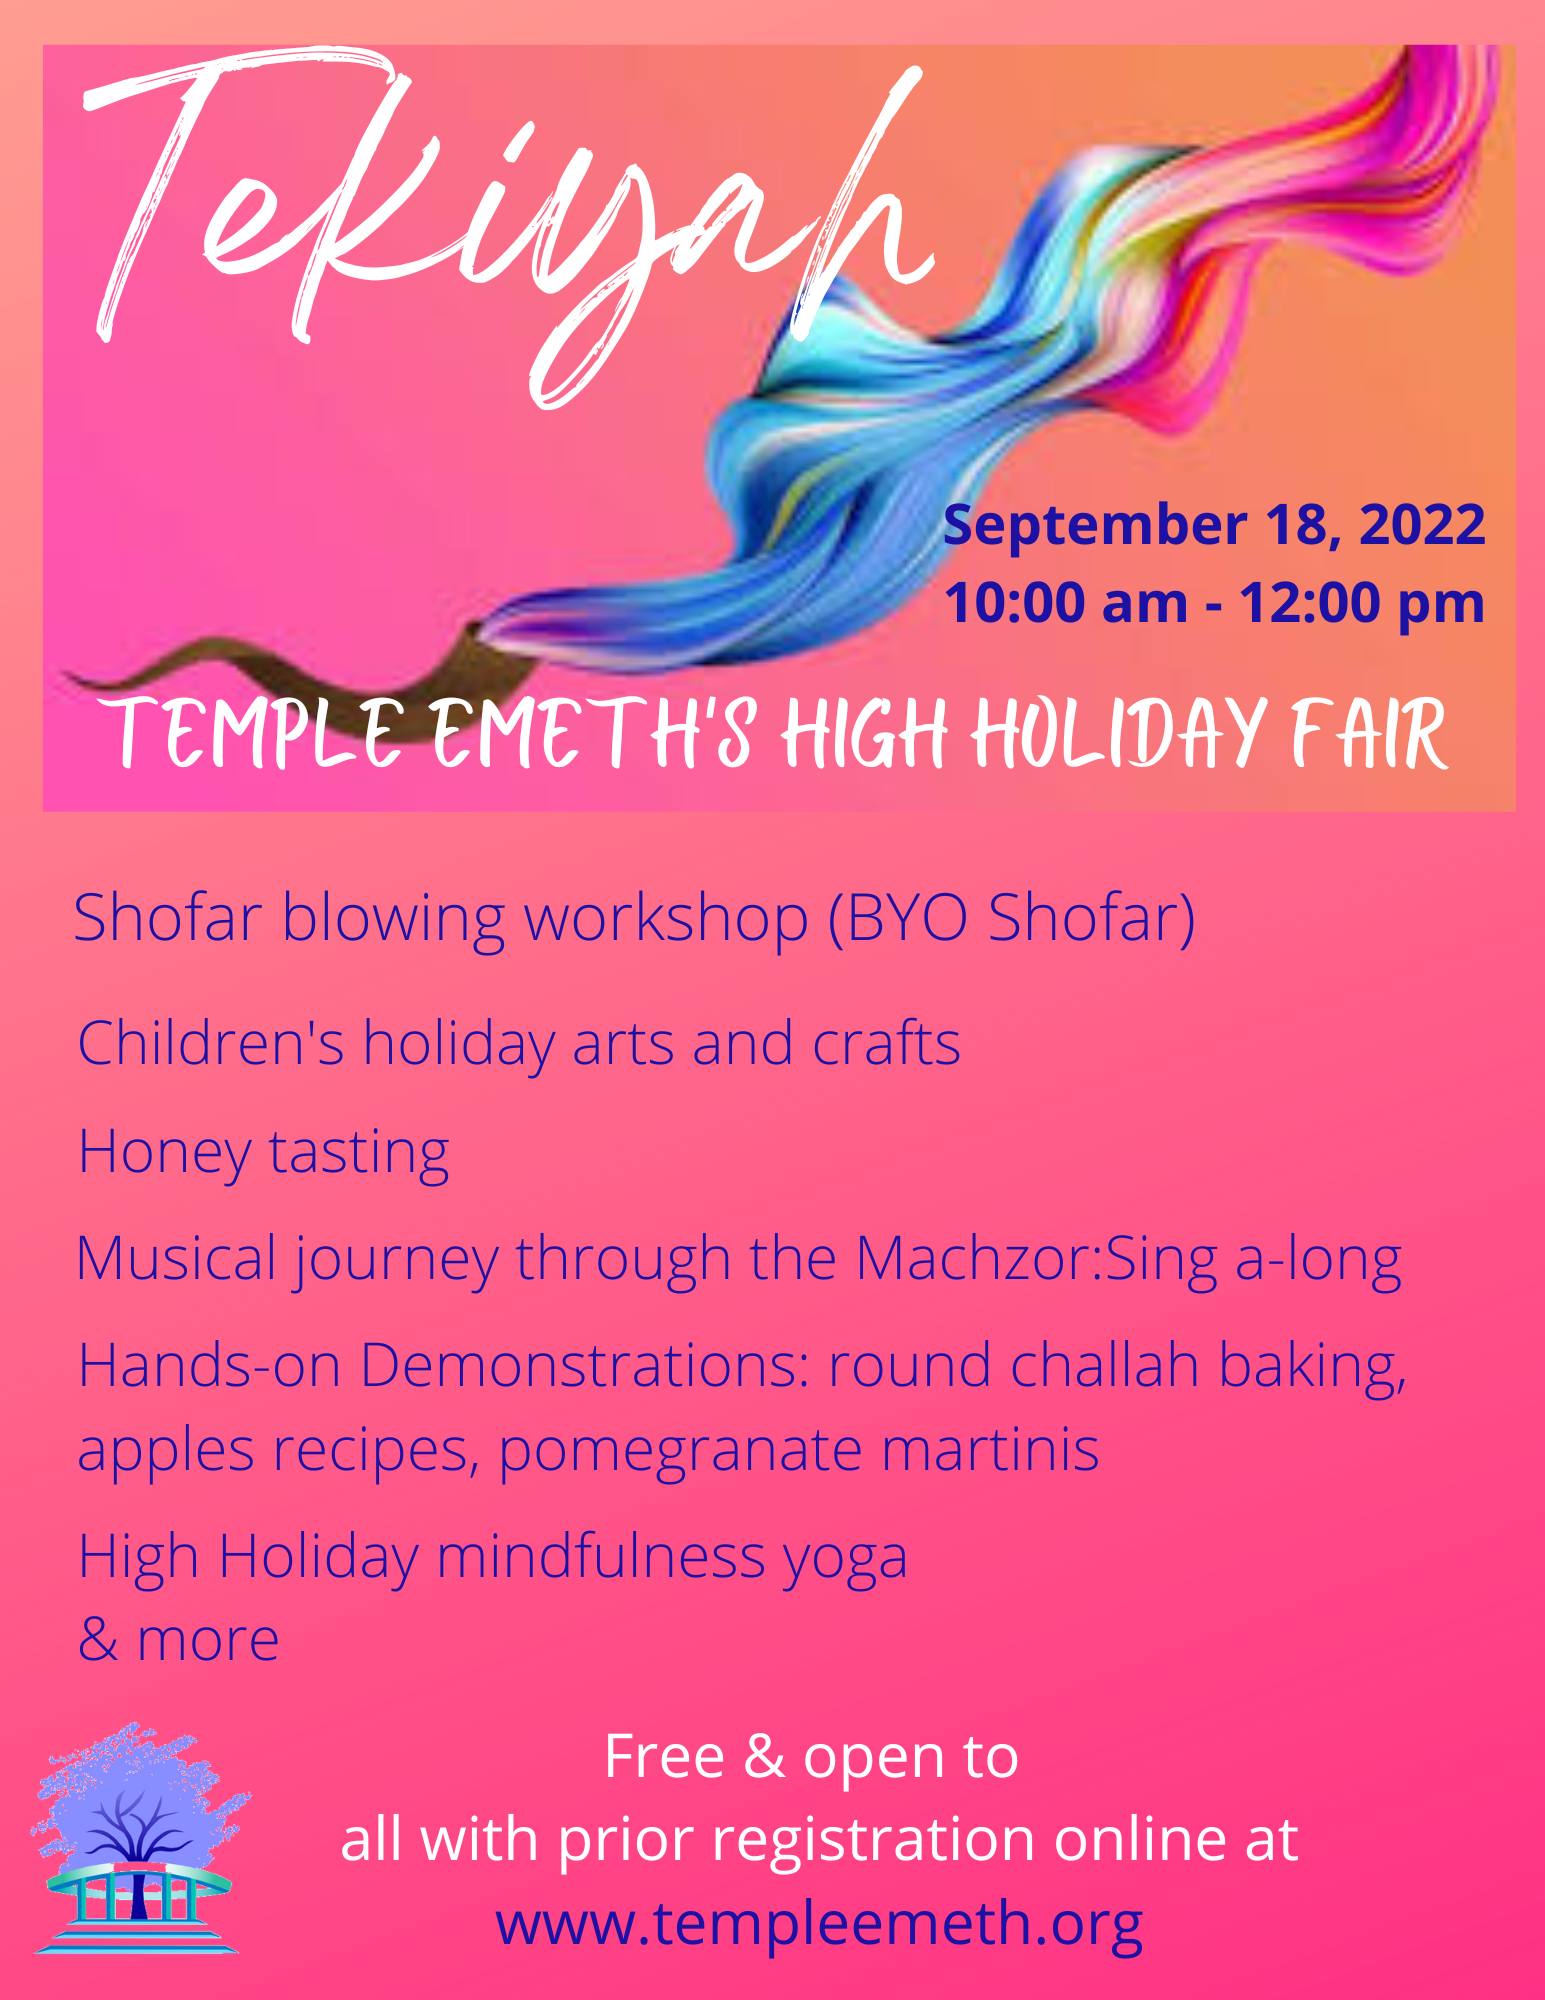 Tekiyah Temple Emeth's High Holiday Fair